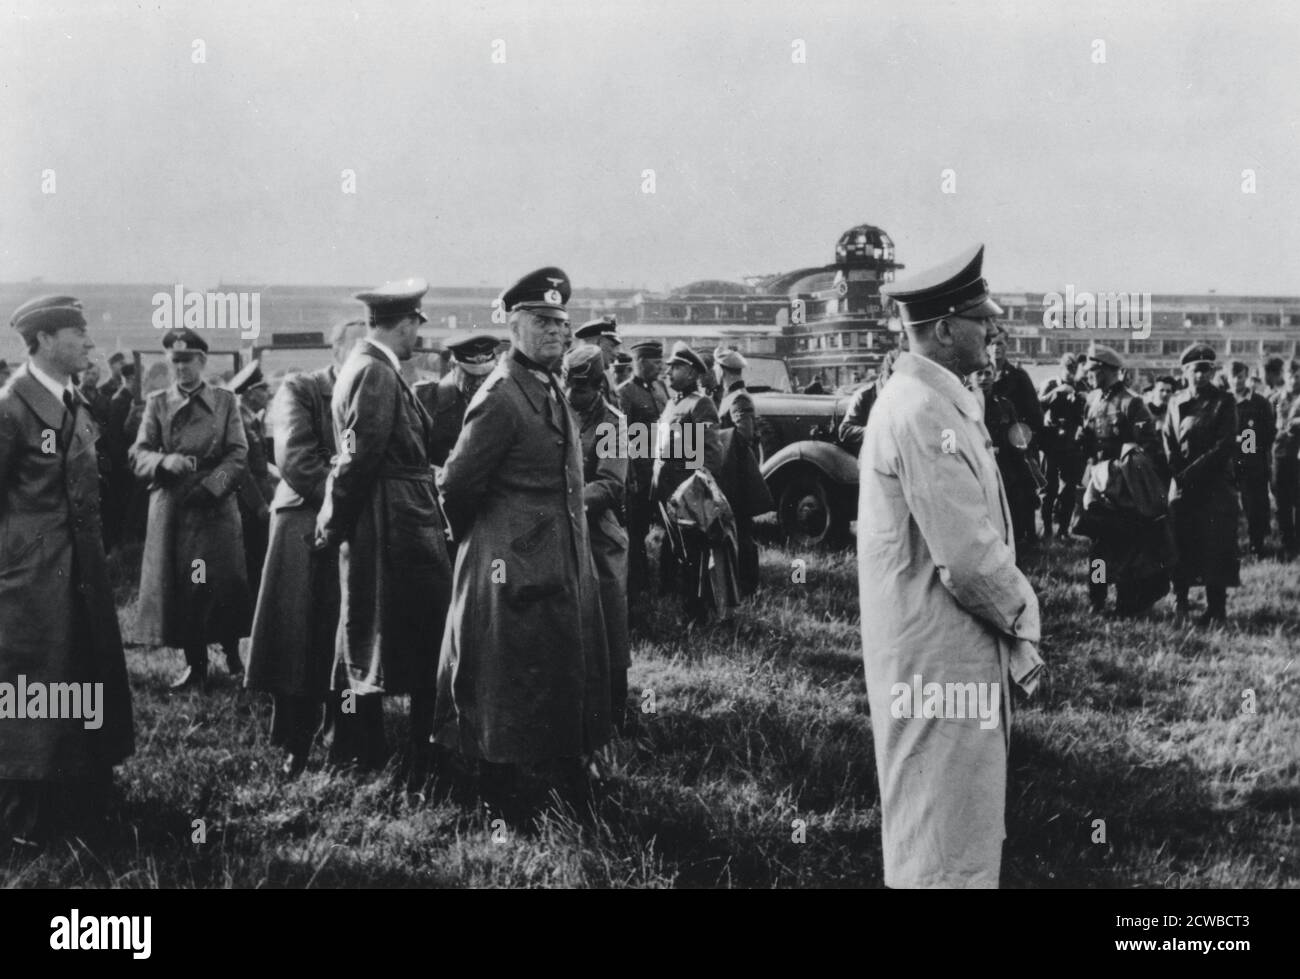 Adolf Hitler ispezionando il campo d'aviazione le Bourget catturato, Parigi, Francia, 23 giugno 1940. Il generale più anziano di Hitler, Wilhelm Keitel, è raffigurato dietro di lui. Il fotografo è sconosciuto. Foto Stock